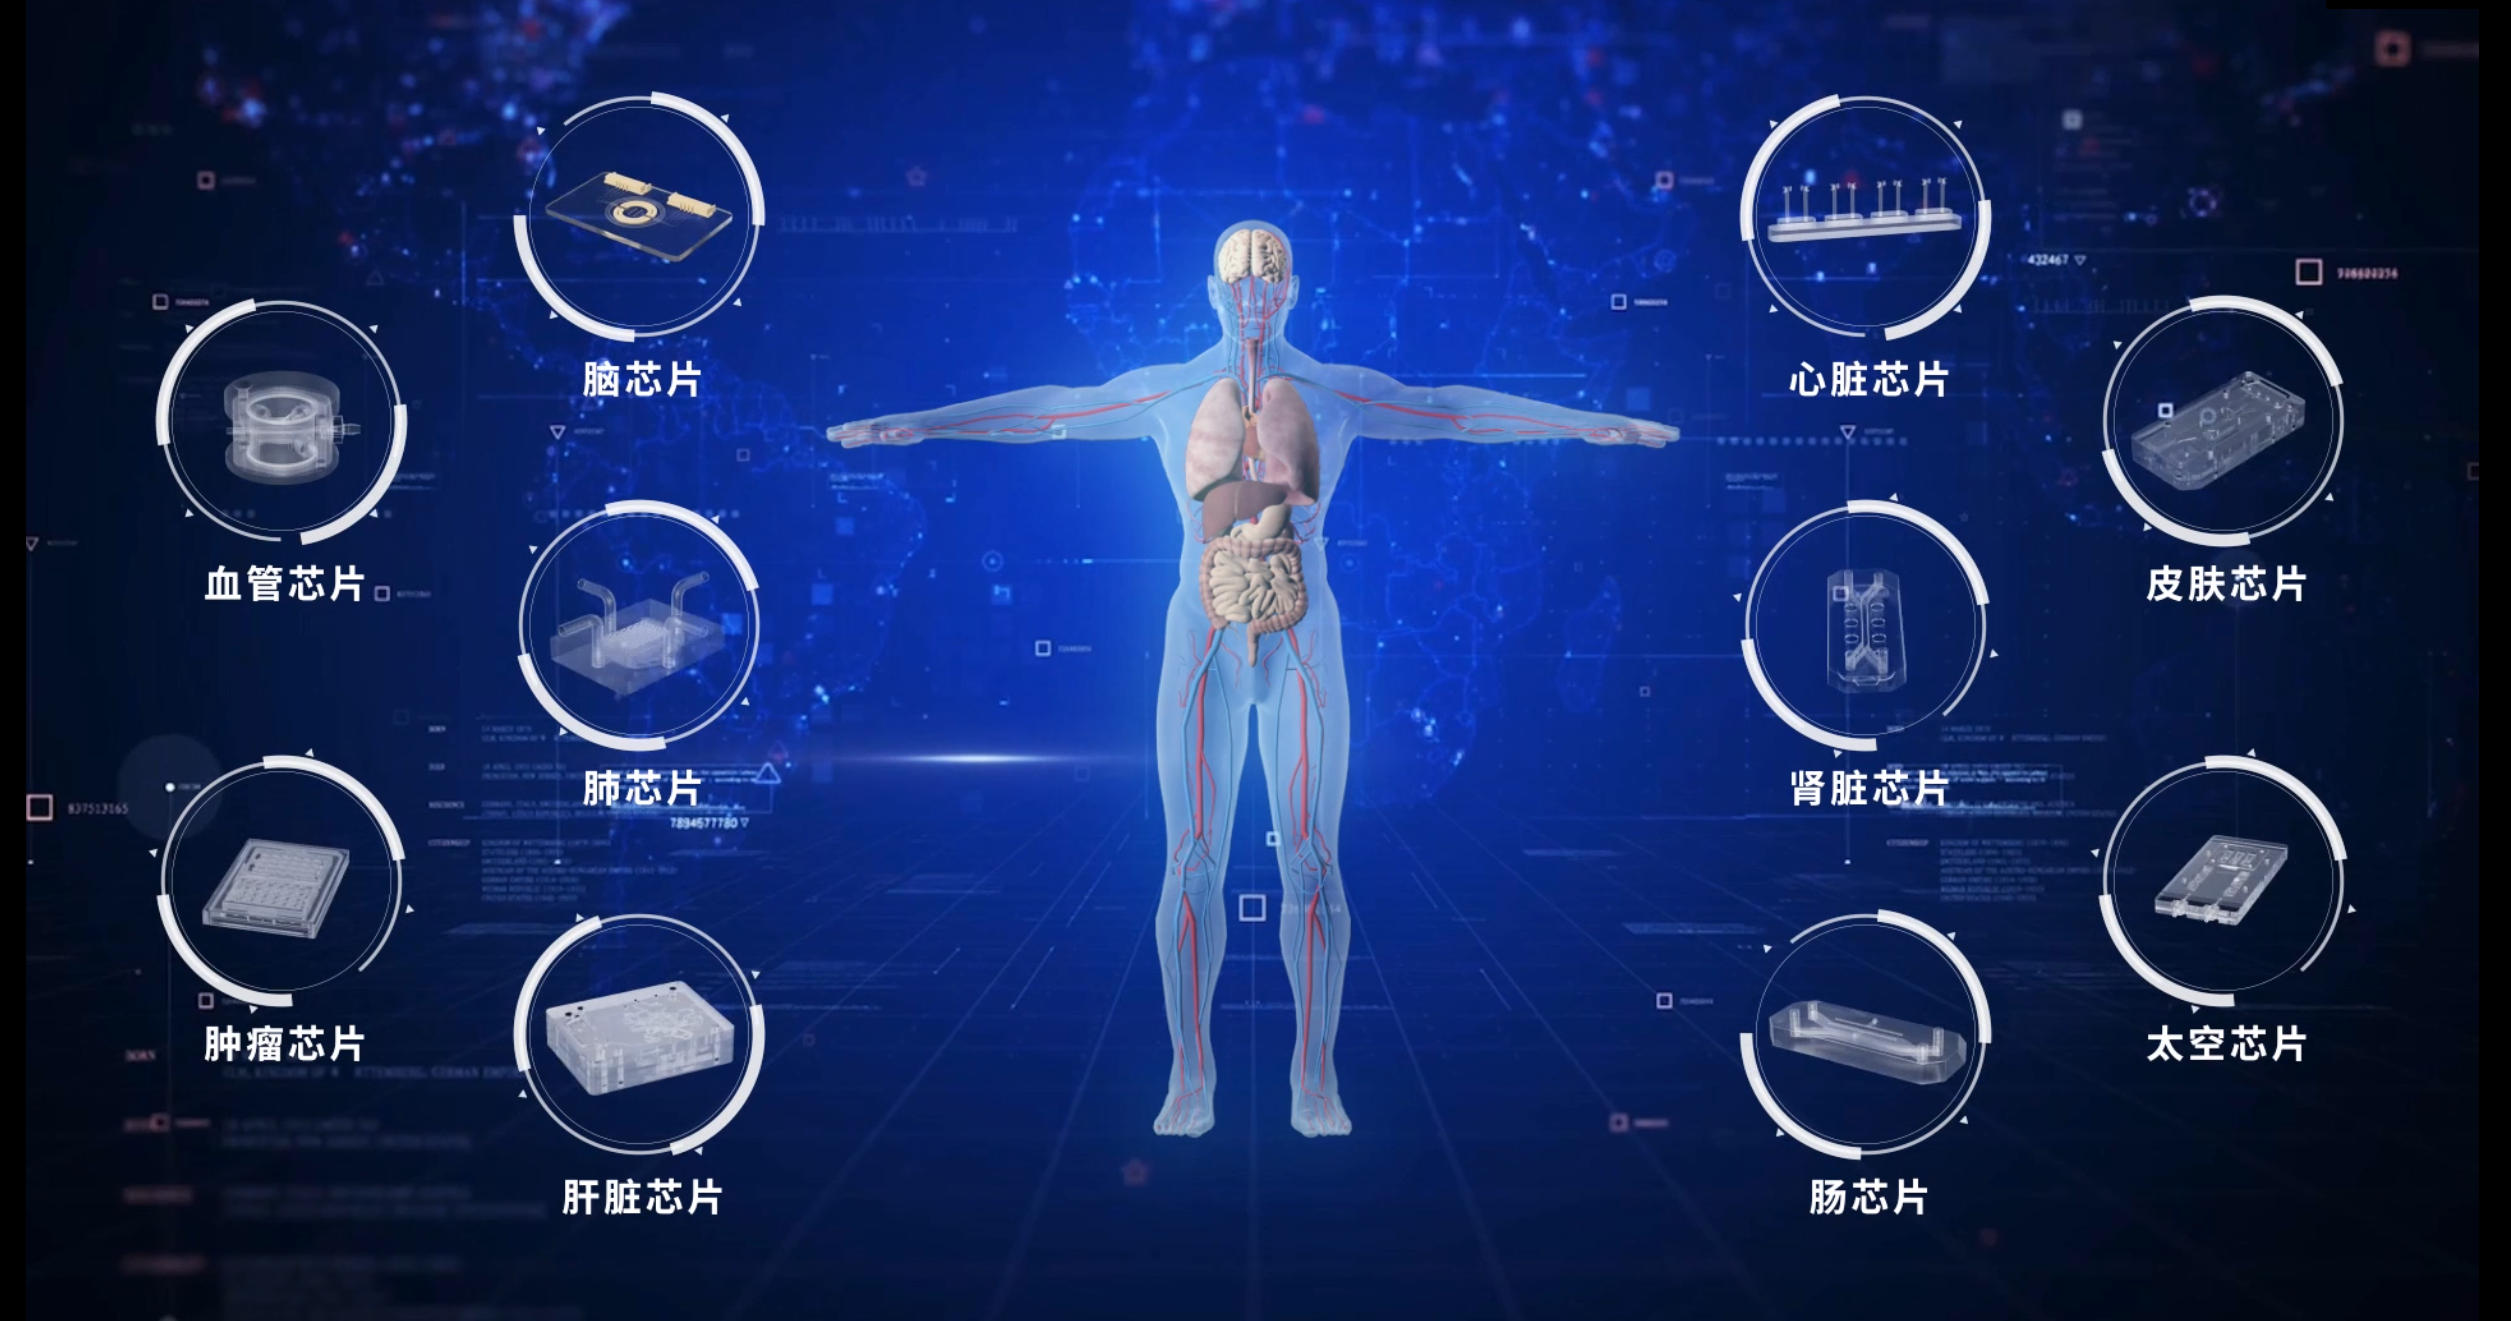 东大苏州医械院孵化公司艾玮得完成近亿元融资 加速人体器官芯片技术突破和产业发展(图2)